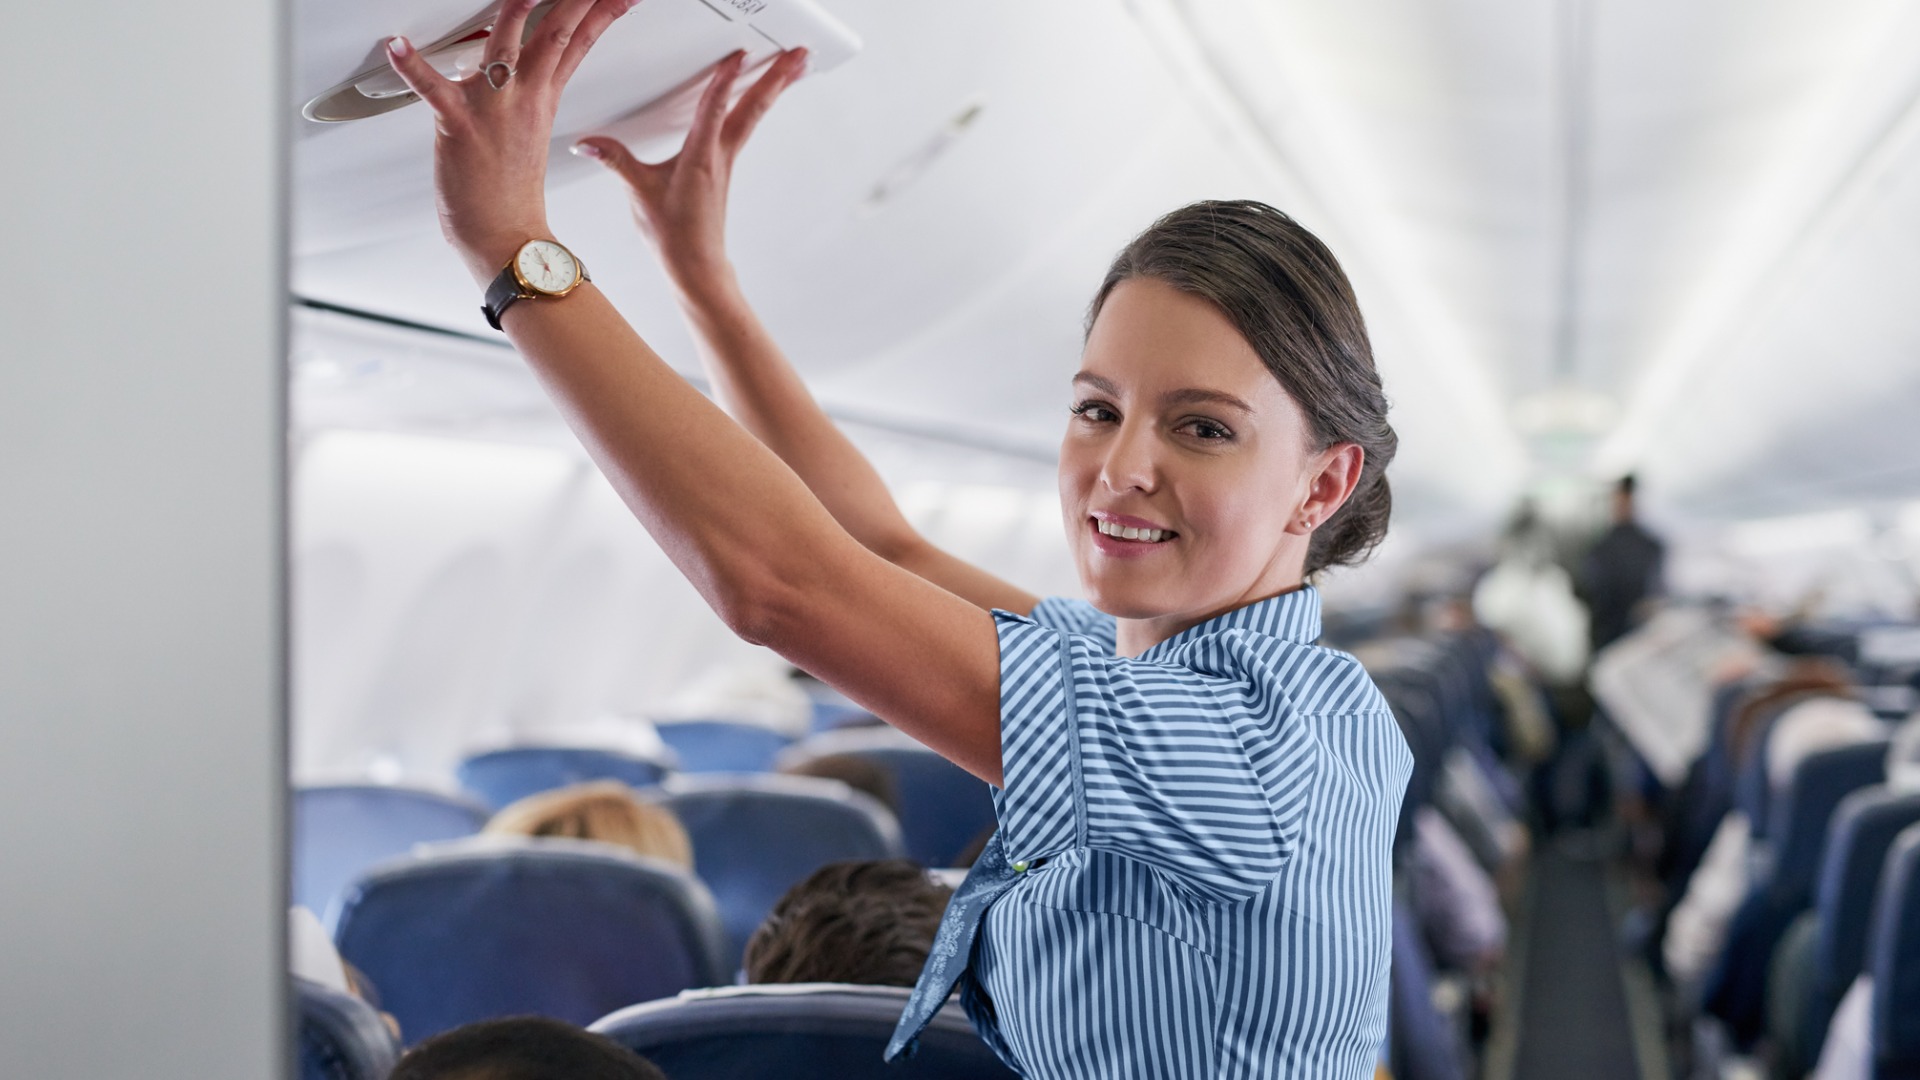 Diventare assistente di volo: percorso, consigli e requisiti per realizzare il tuo sogno